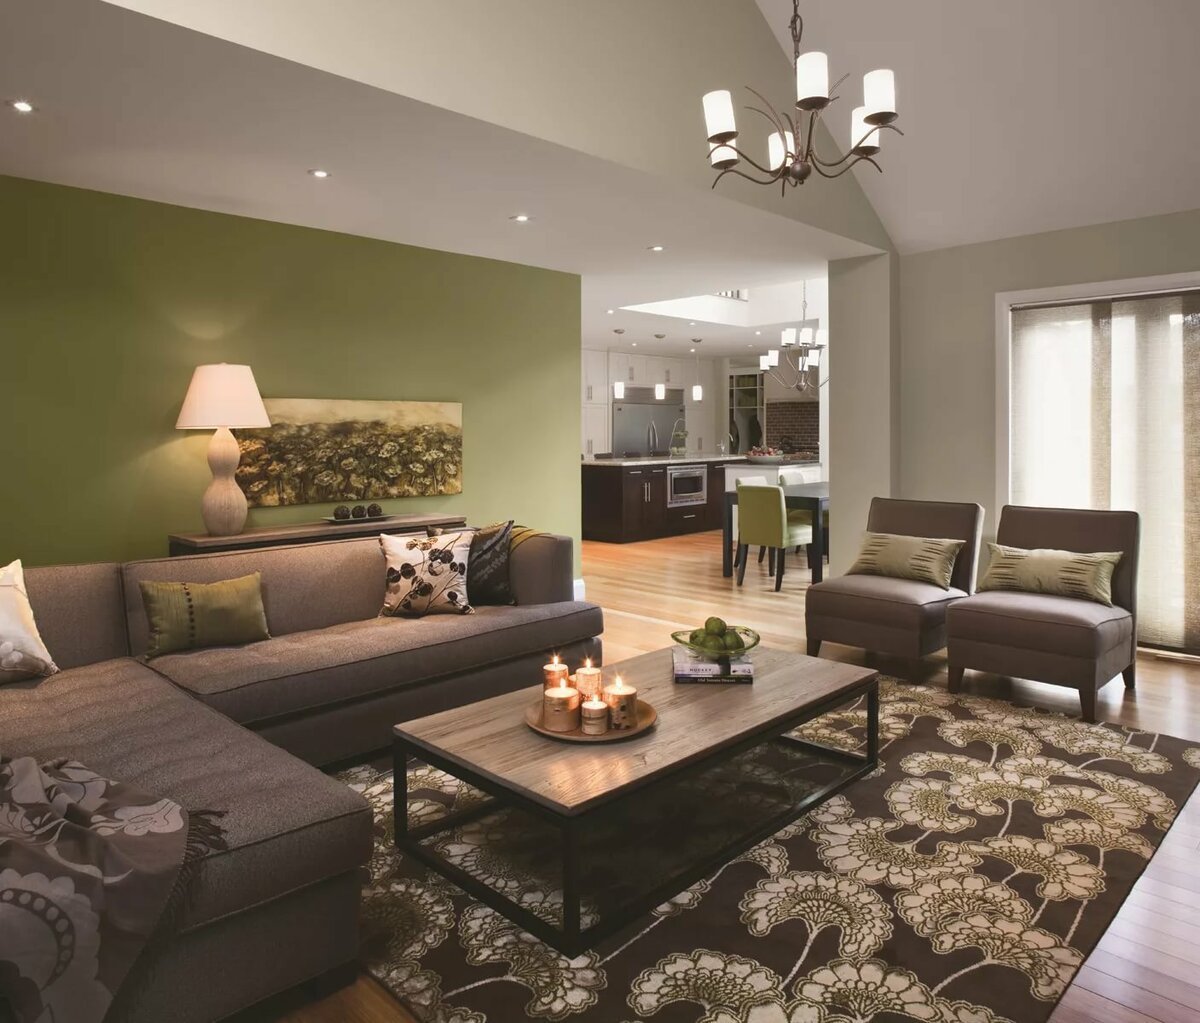 Зеленая спальня - 115 фото красивого и приятного дизайна с зеленым оттенком